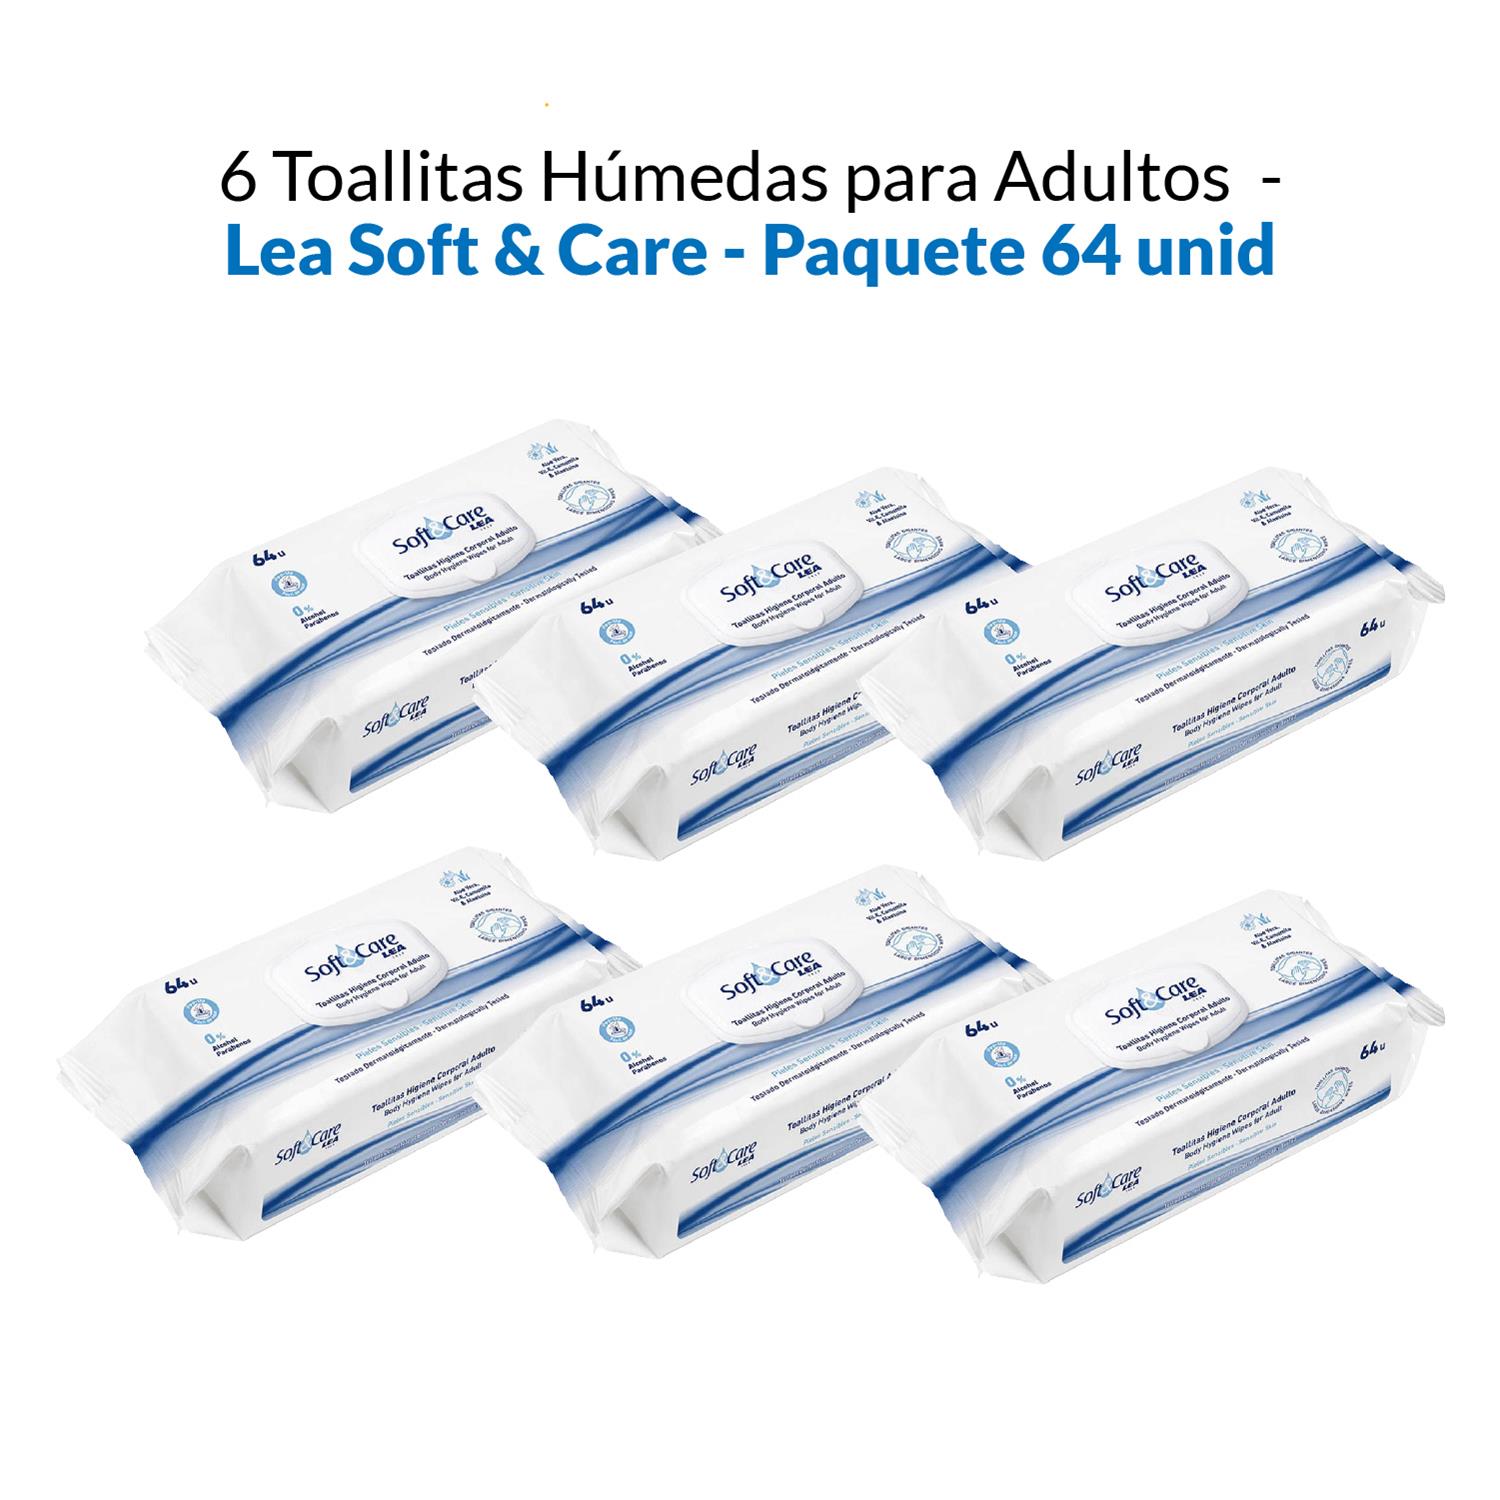 2 Toallitas Húmedas para Adultos - Lea Soft & Care - Paquete 64